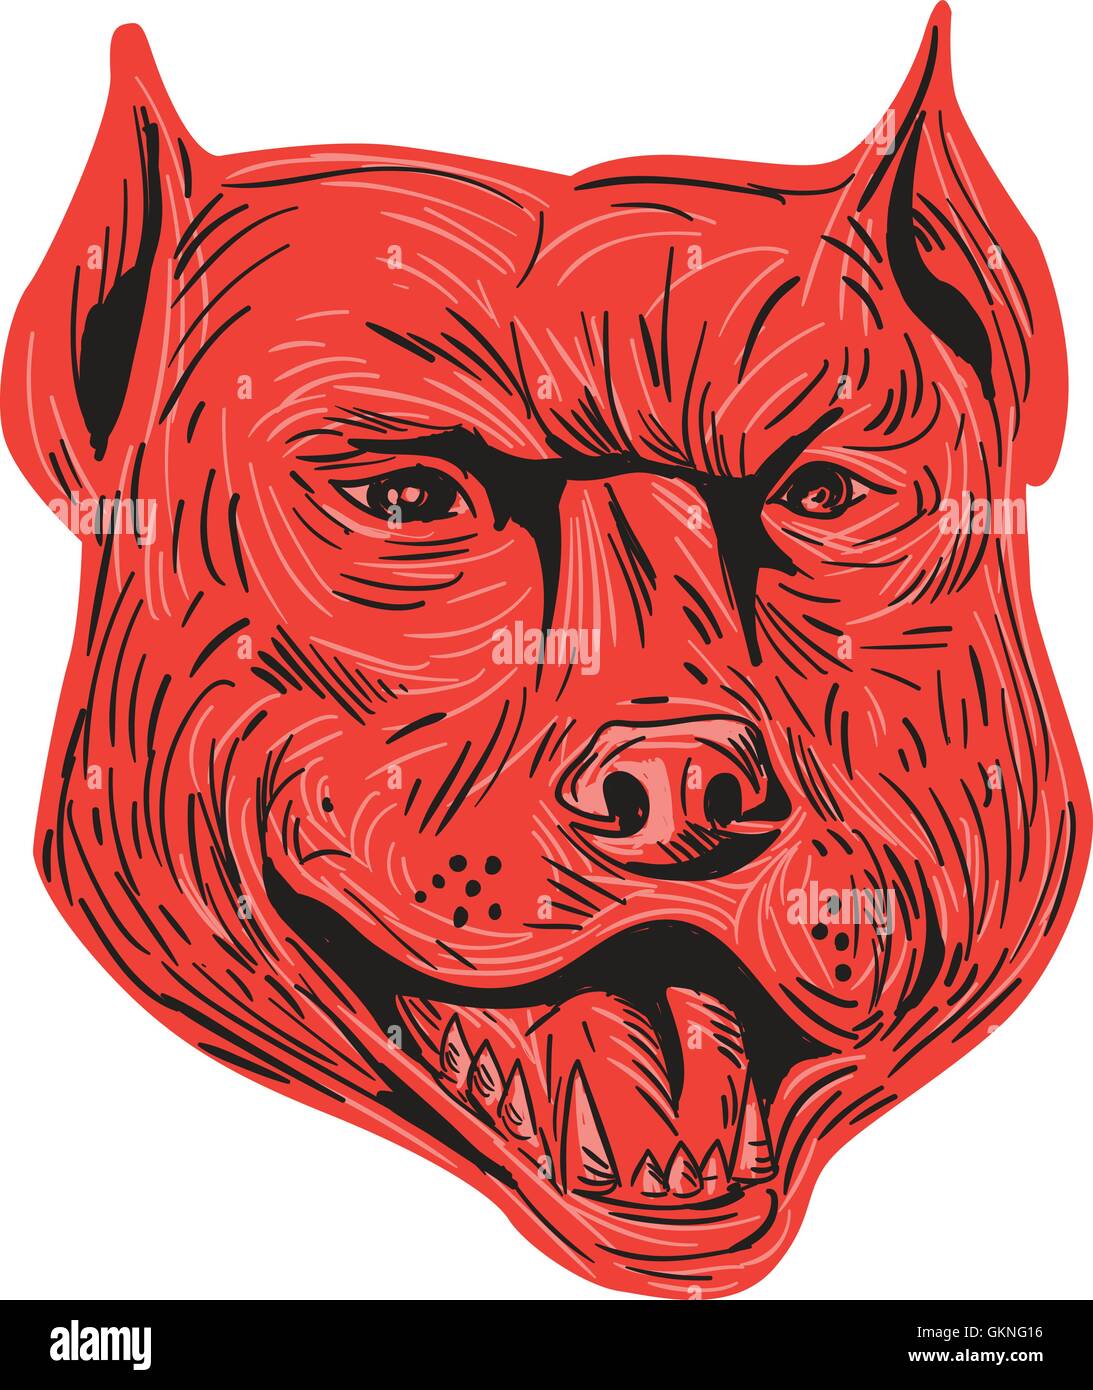 Style croquis dessin illustration d'un pitbull en colère face à l'avant de la tête de chien bâtard isolé sur fond blanc. Illustration de Vecteur